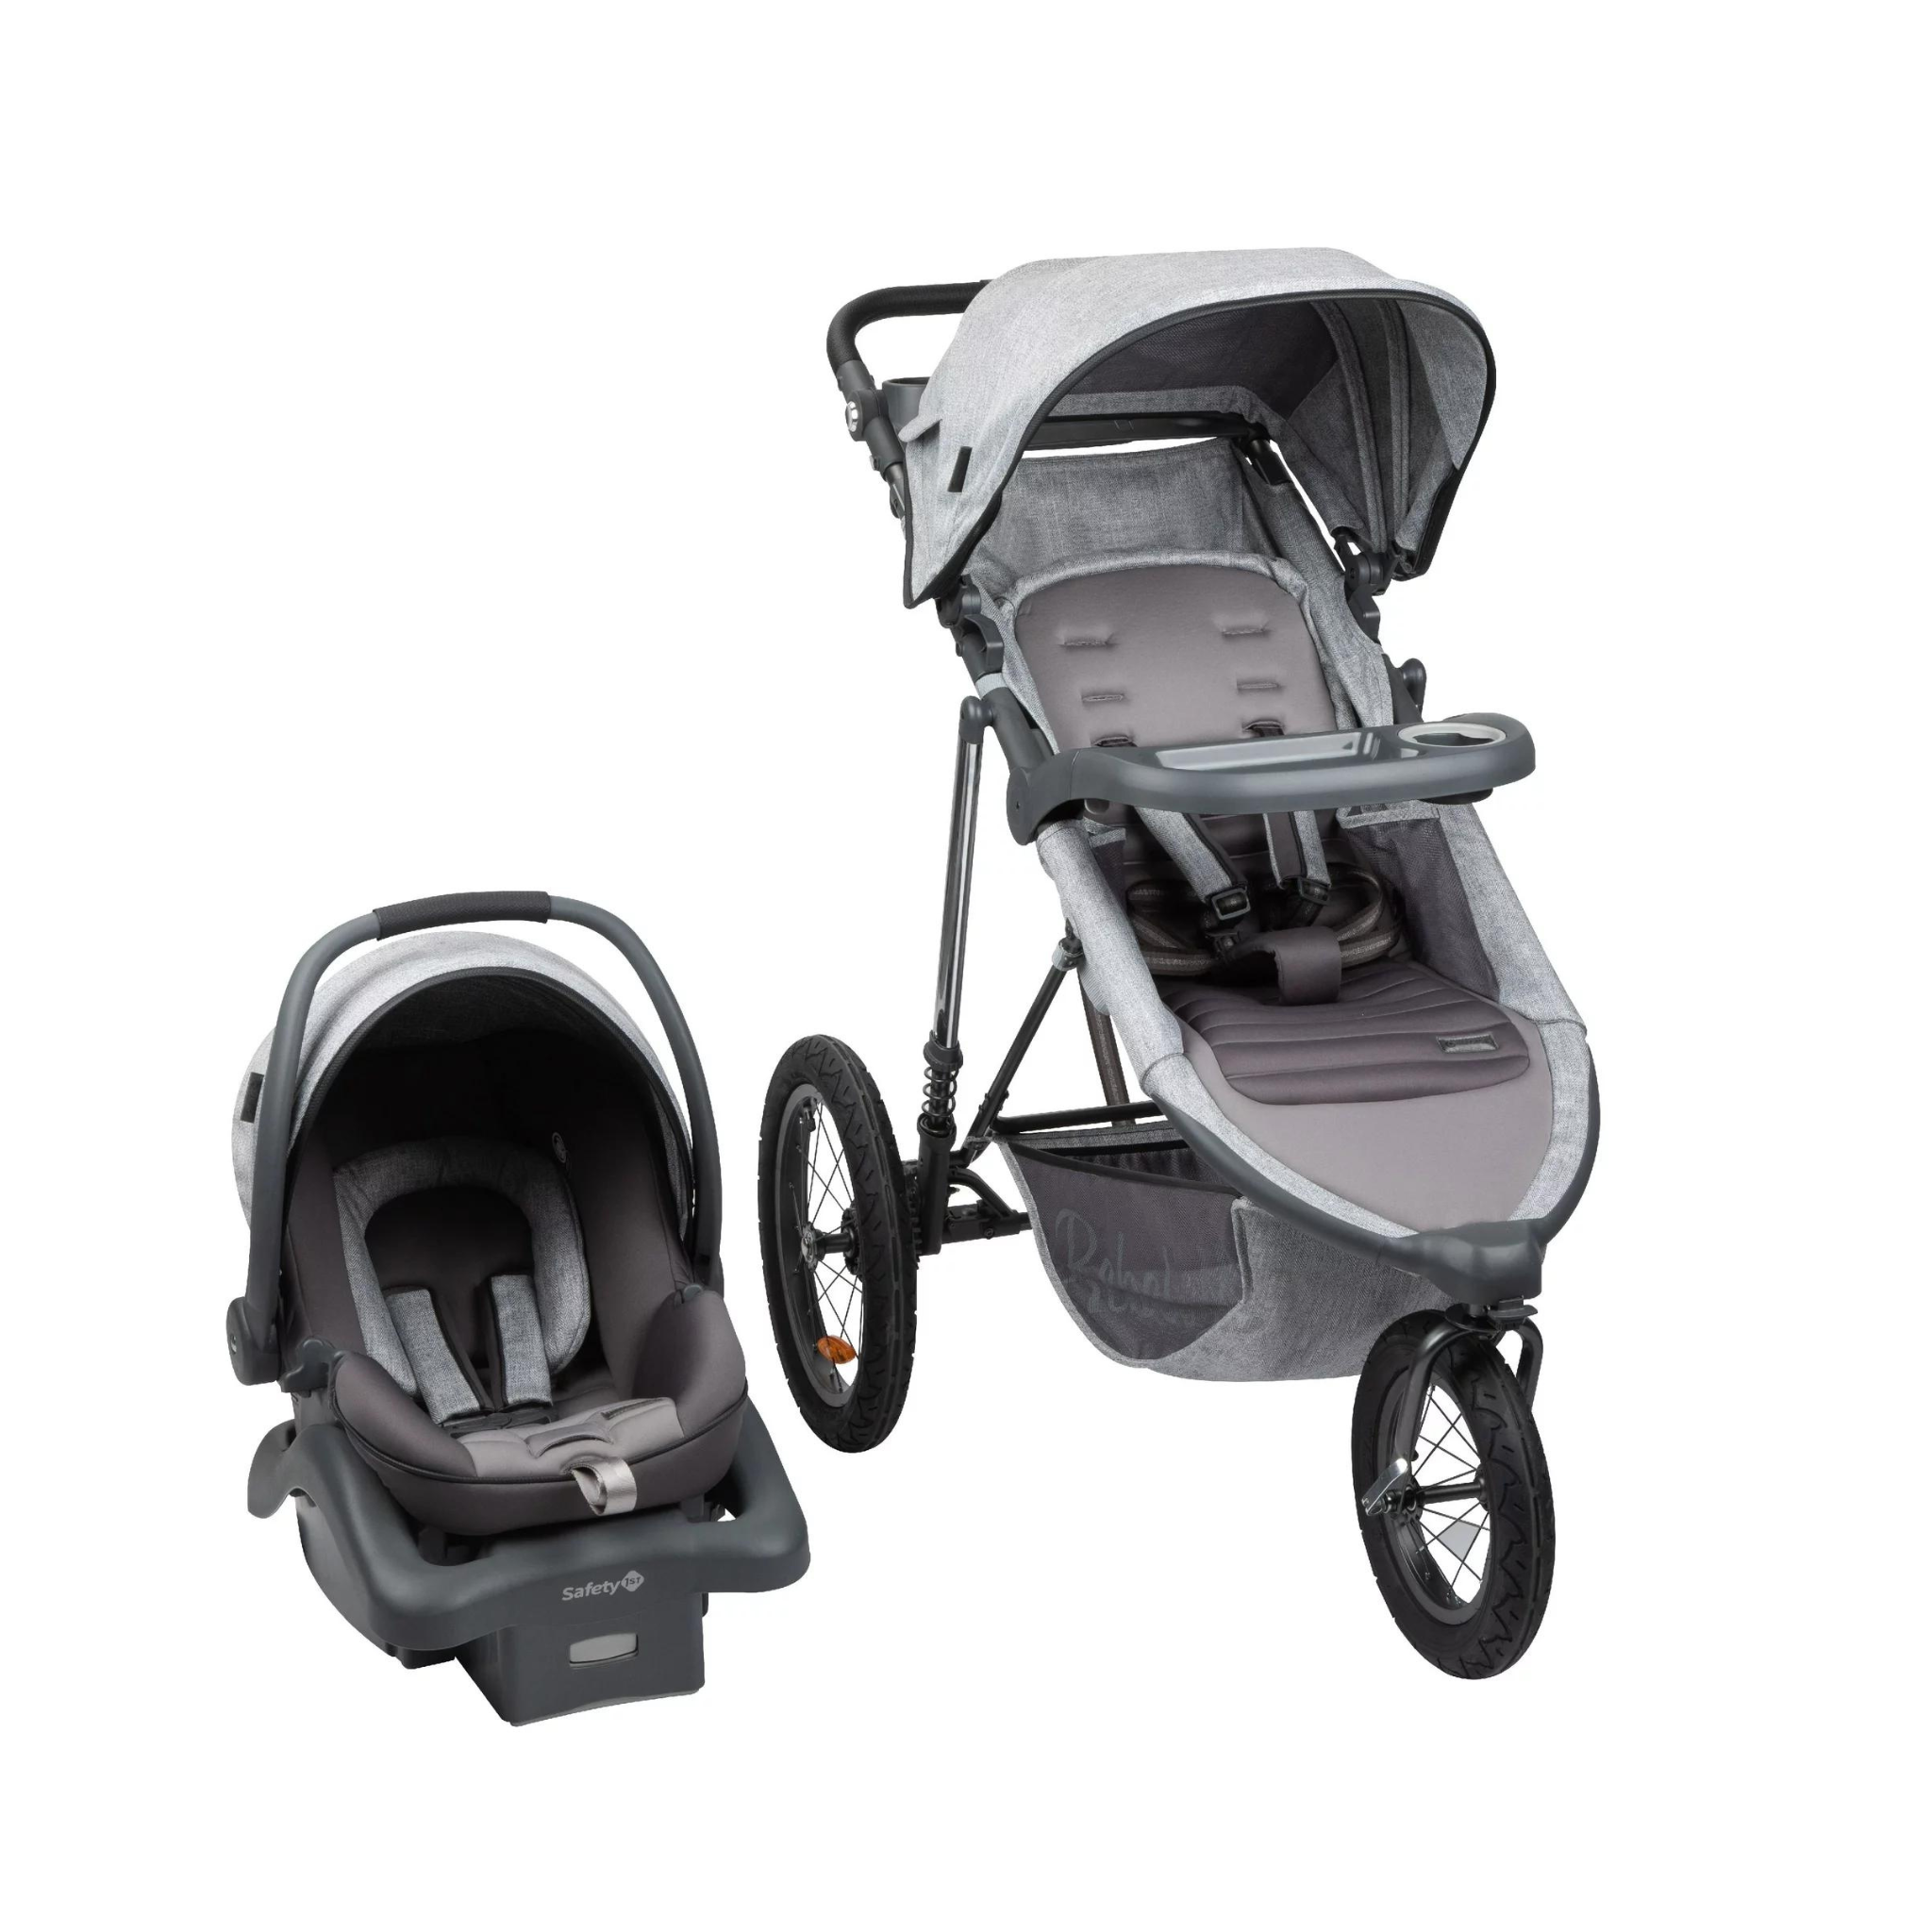 Monbebe Rebel II Travel System Stroller and Infant Car Seat